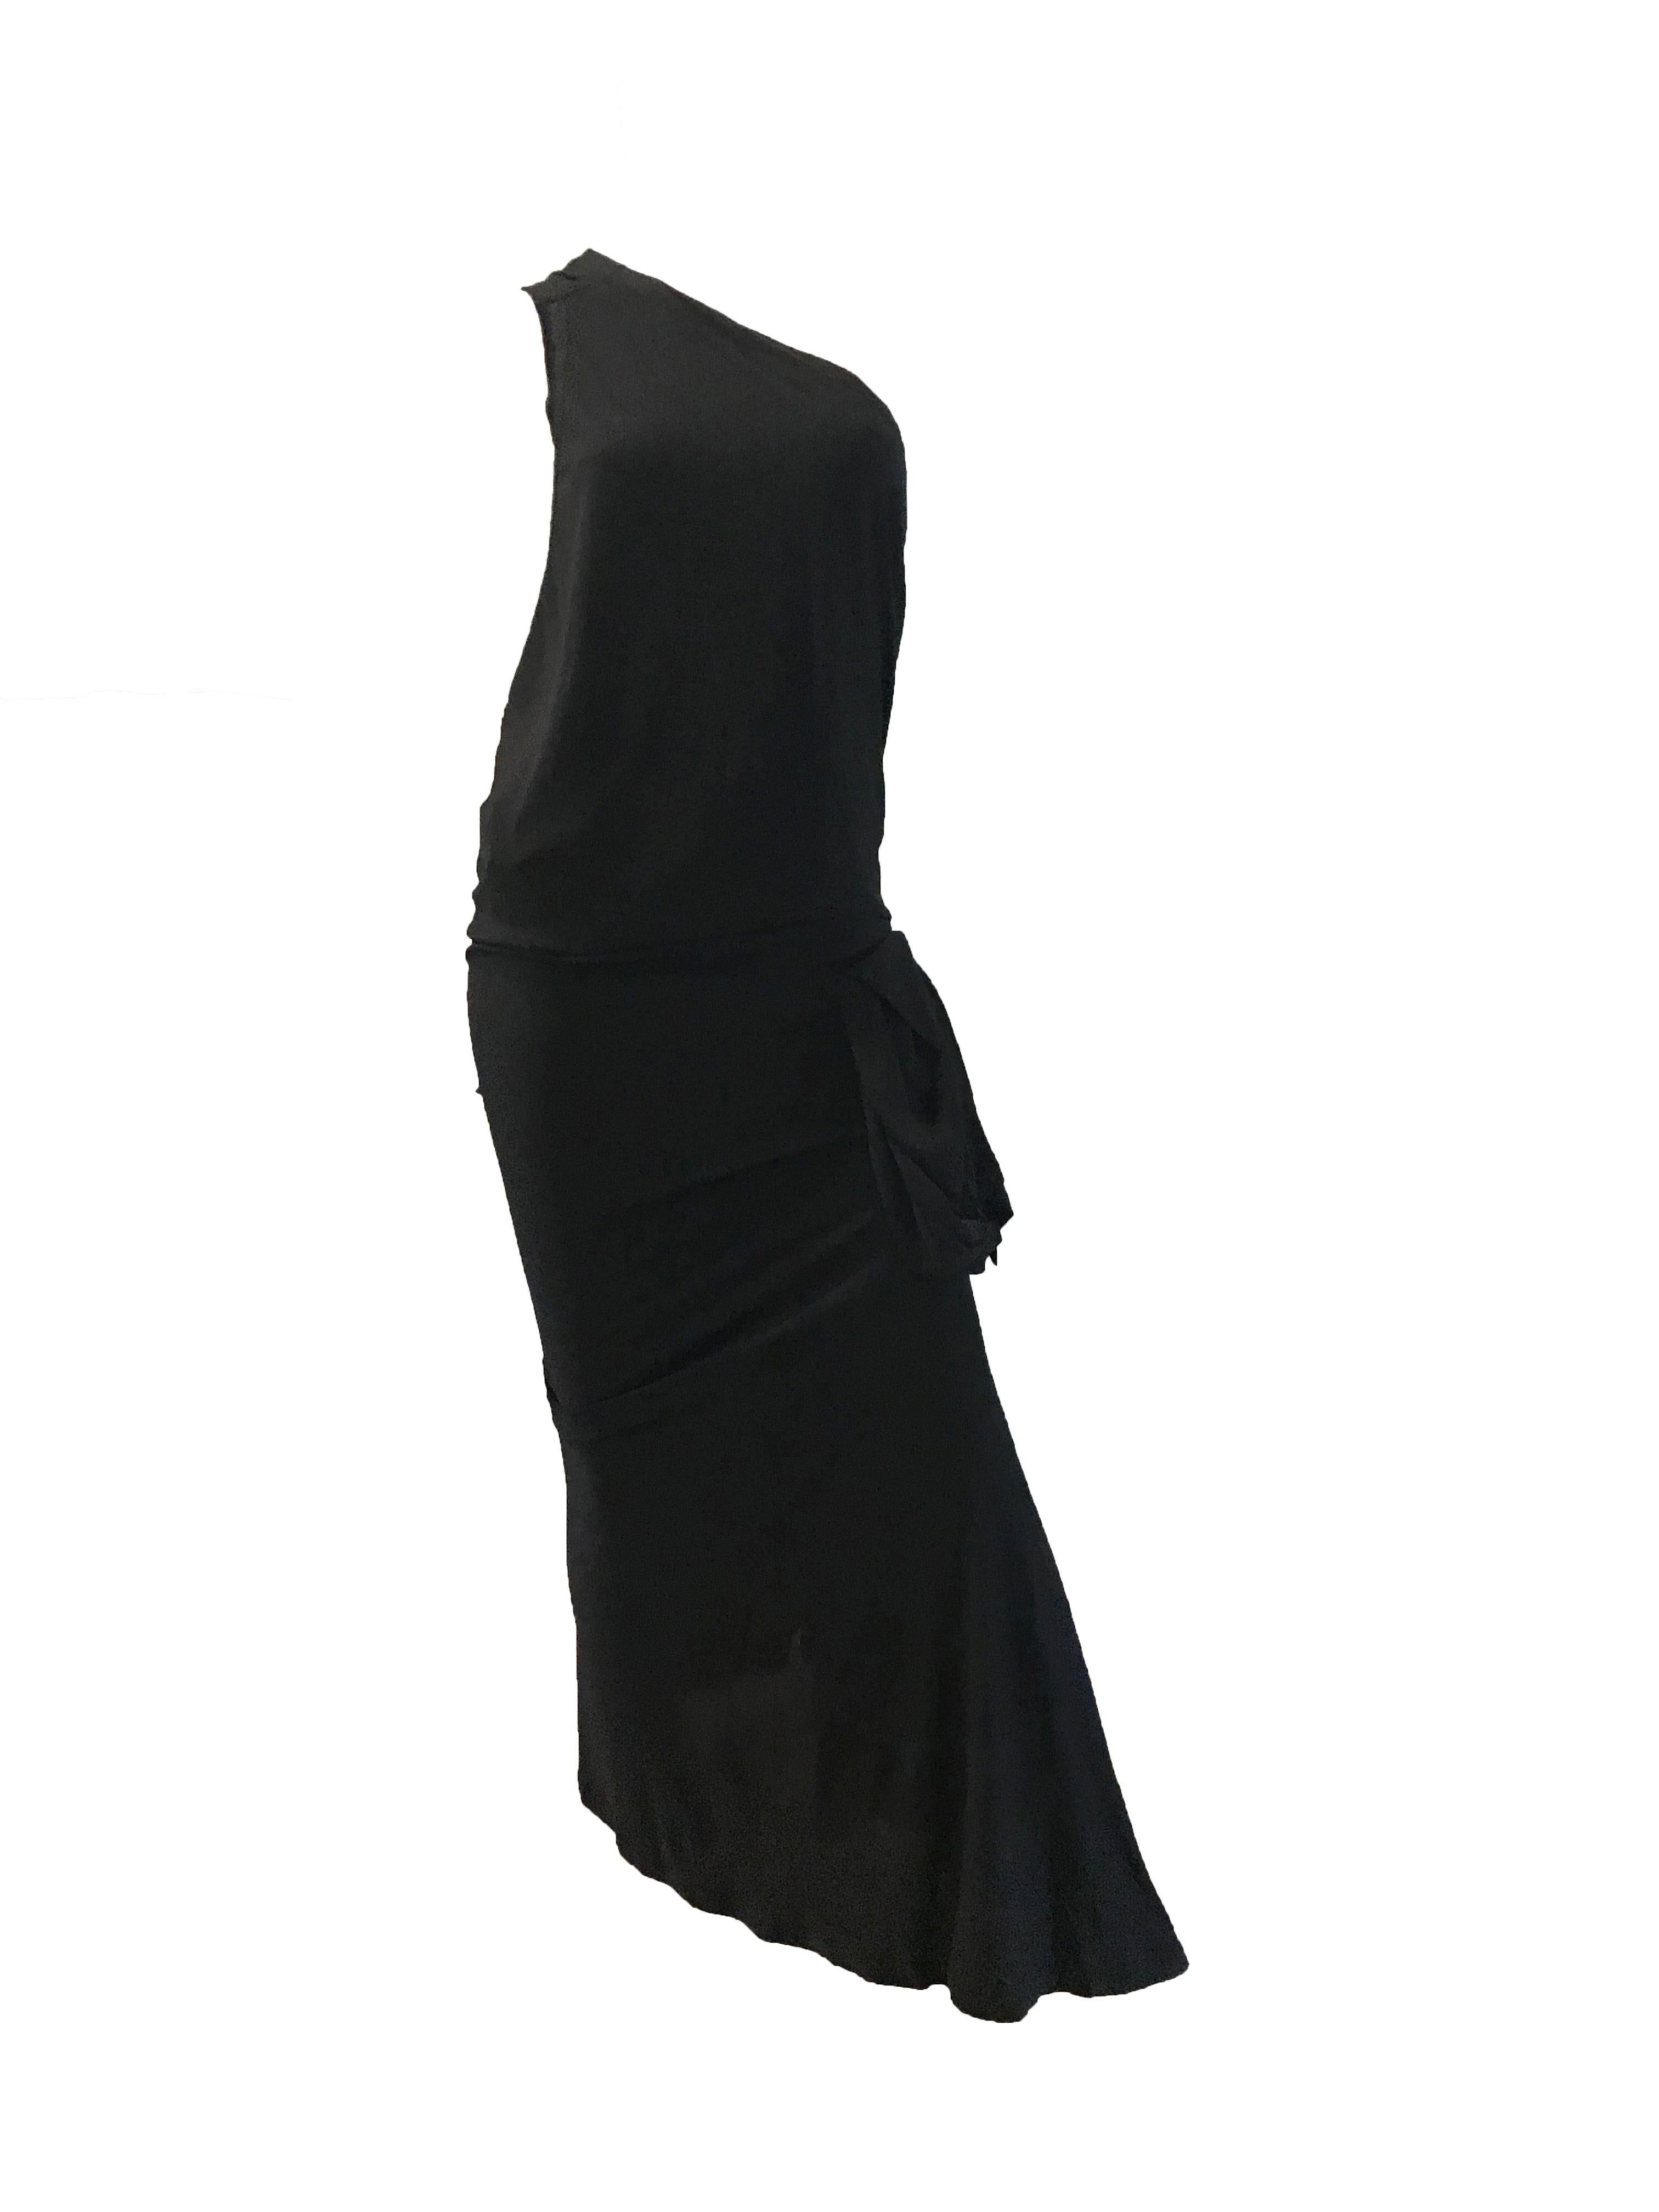 Jean Paul Gaultier Schwarzes One-Shoulder-Kleid mit angehängtem Etui 

100% Viskose 
31